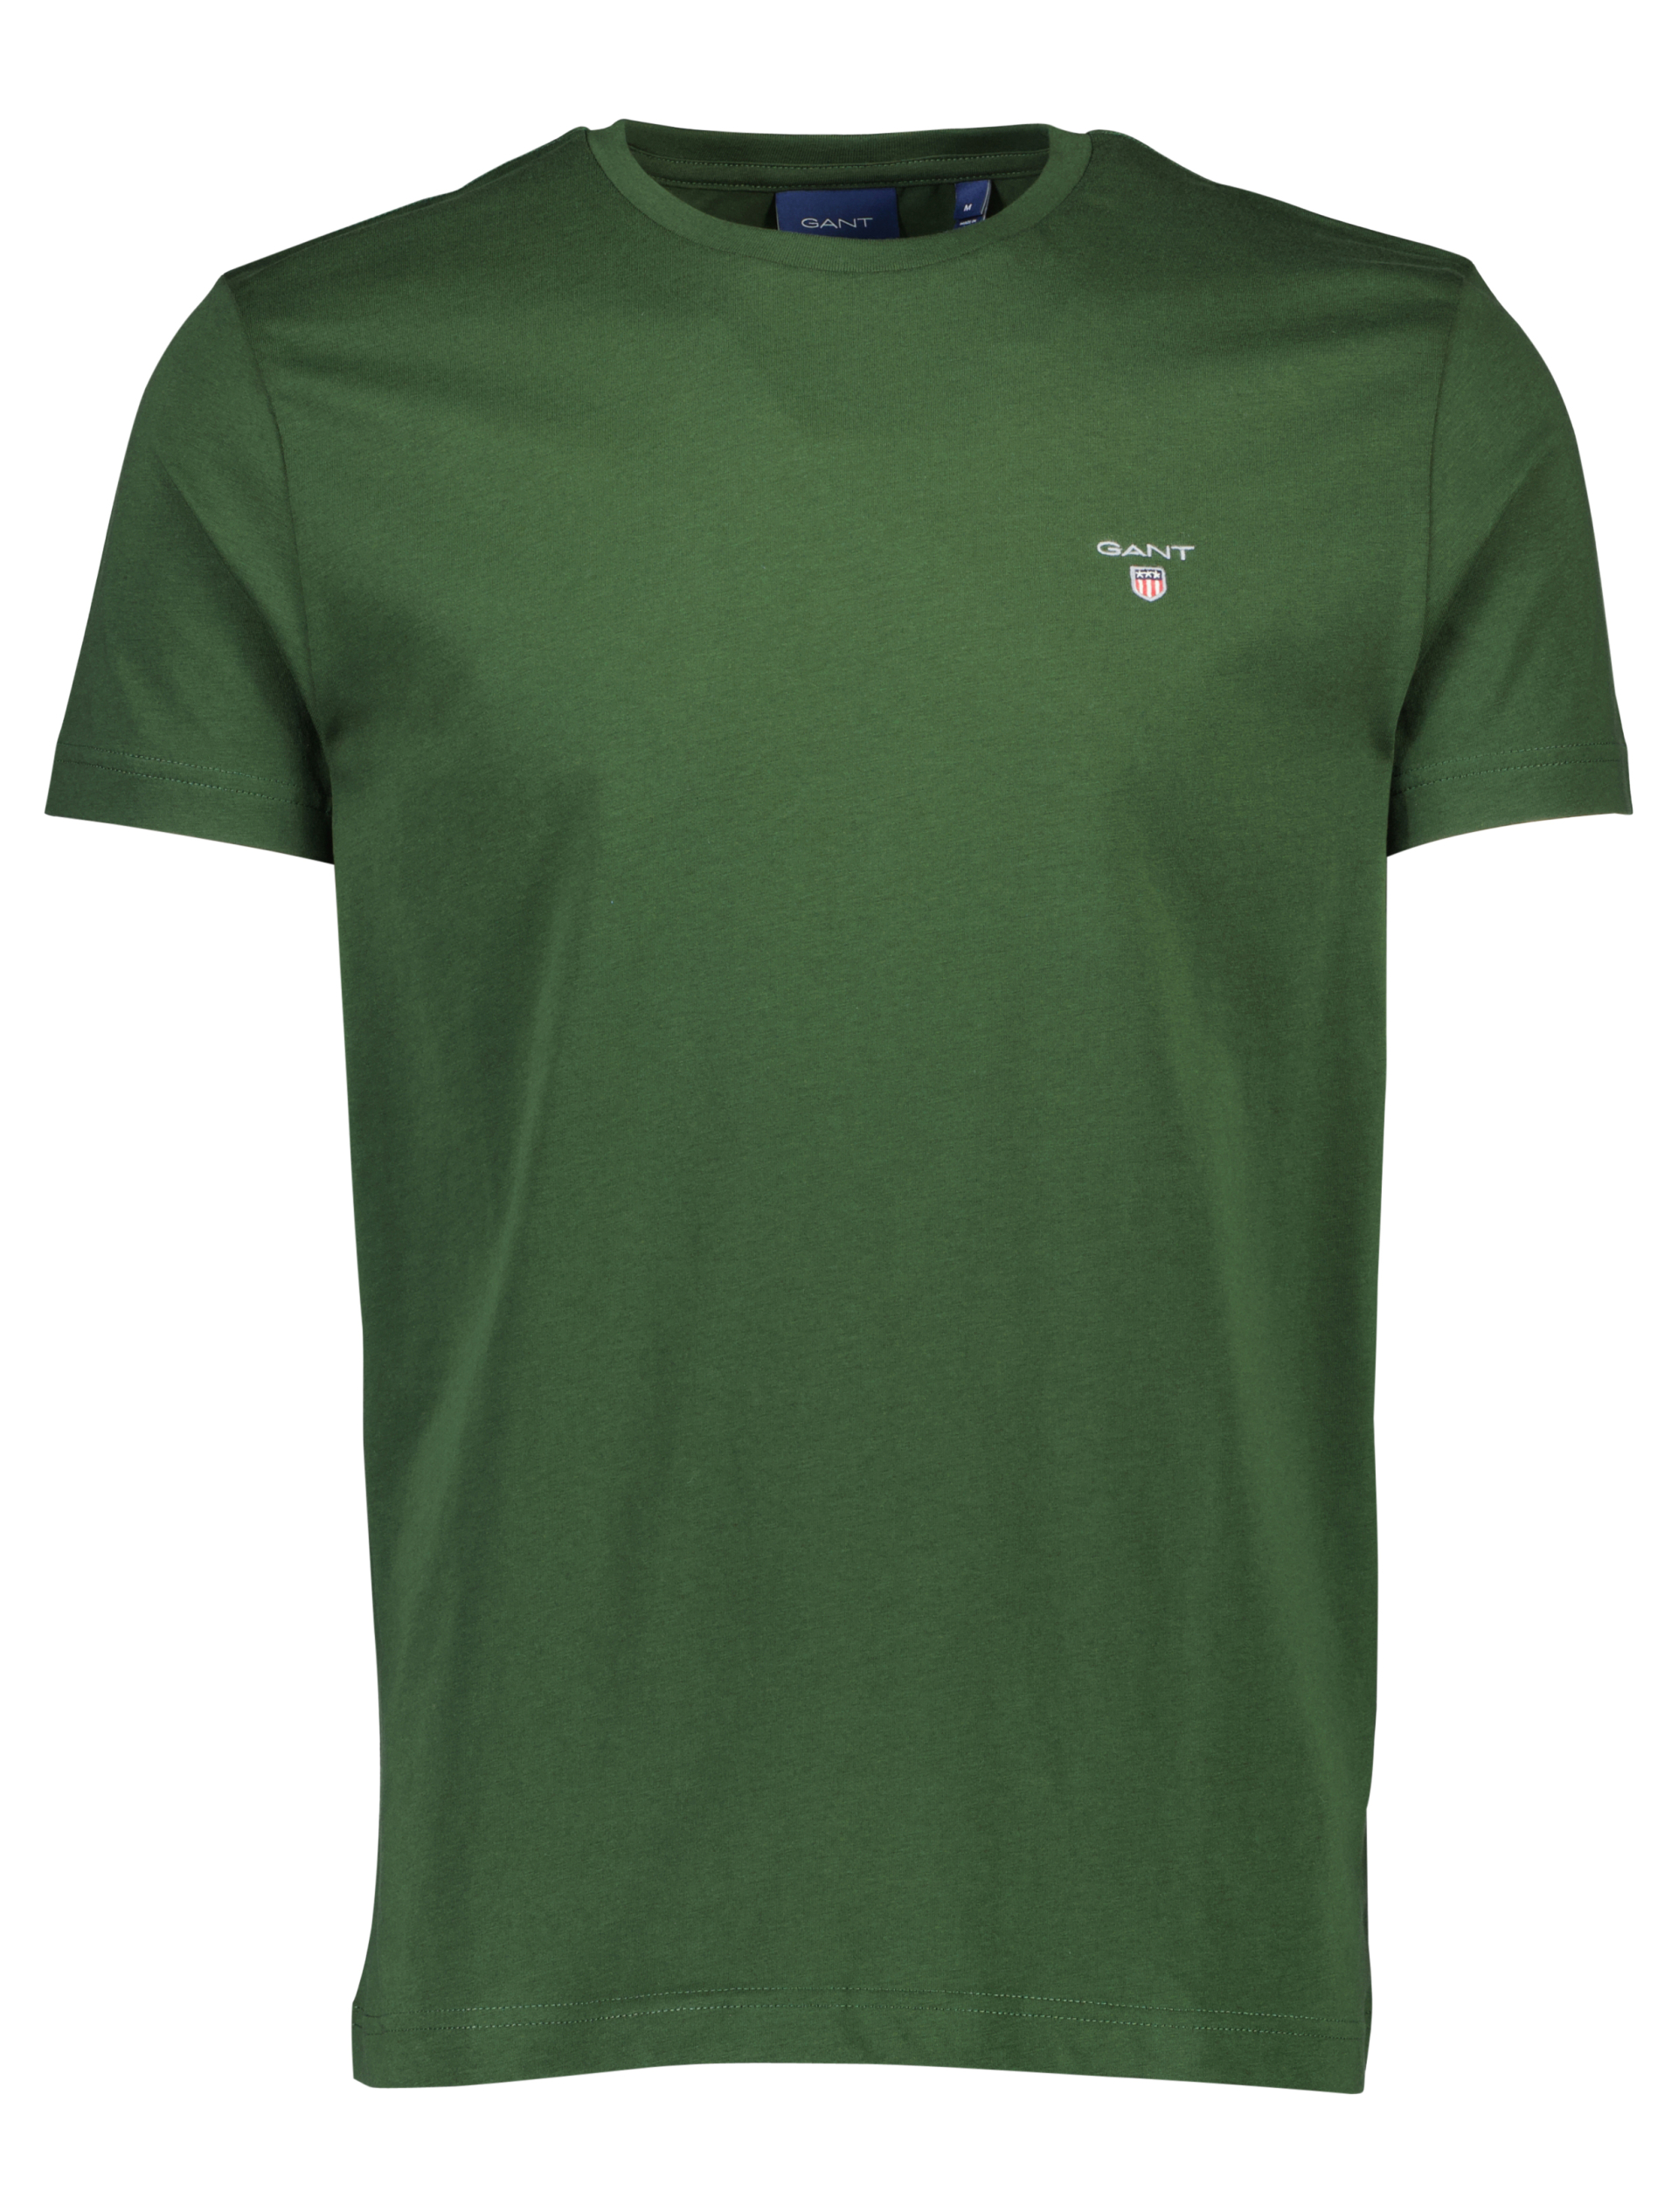 Gant T-shirt grøn / 363 storm green